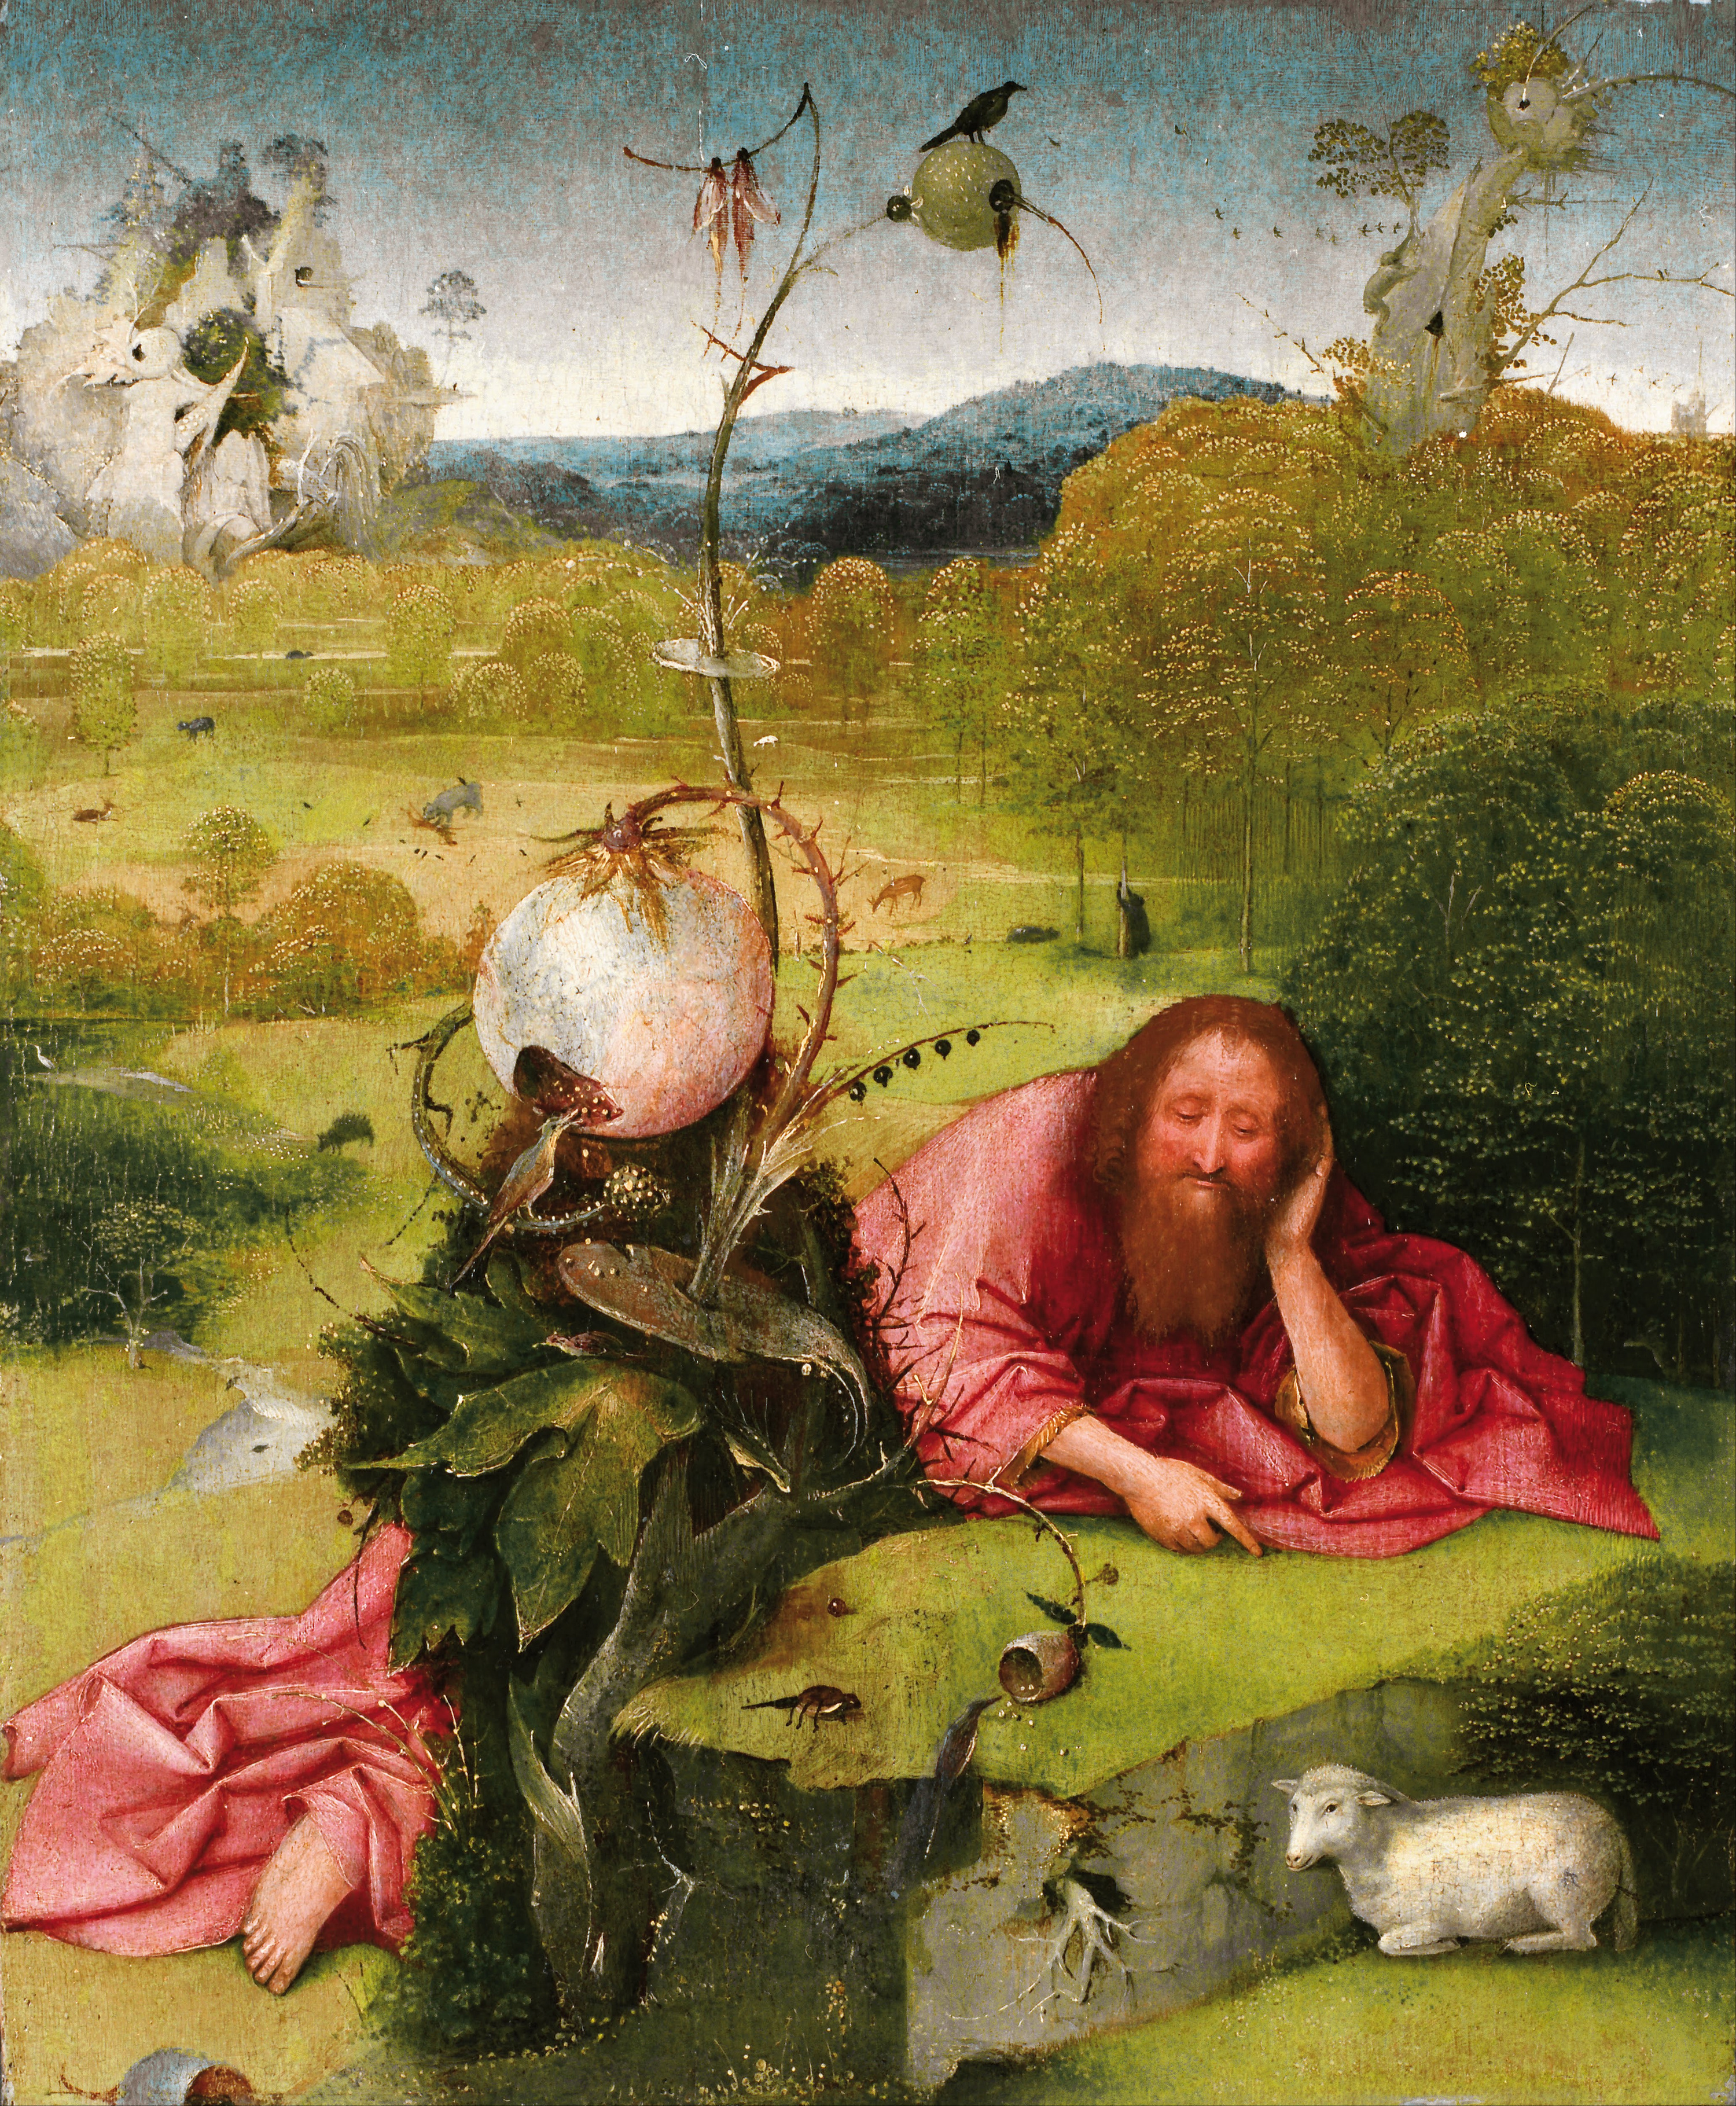 San Giovanni Battista nella natura selvaggia by Hieronymus Bosch - 1489 - 49 x 40,5 cm 